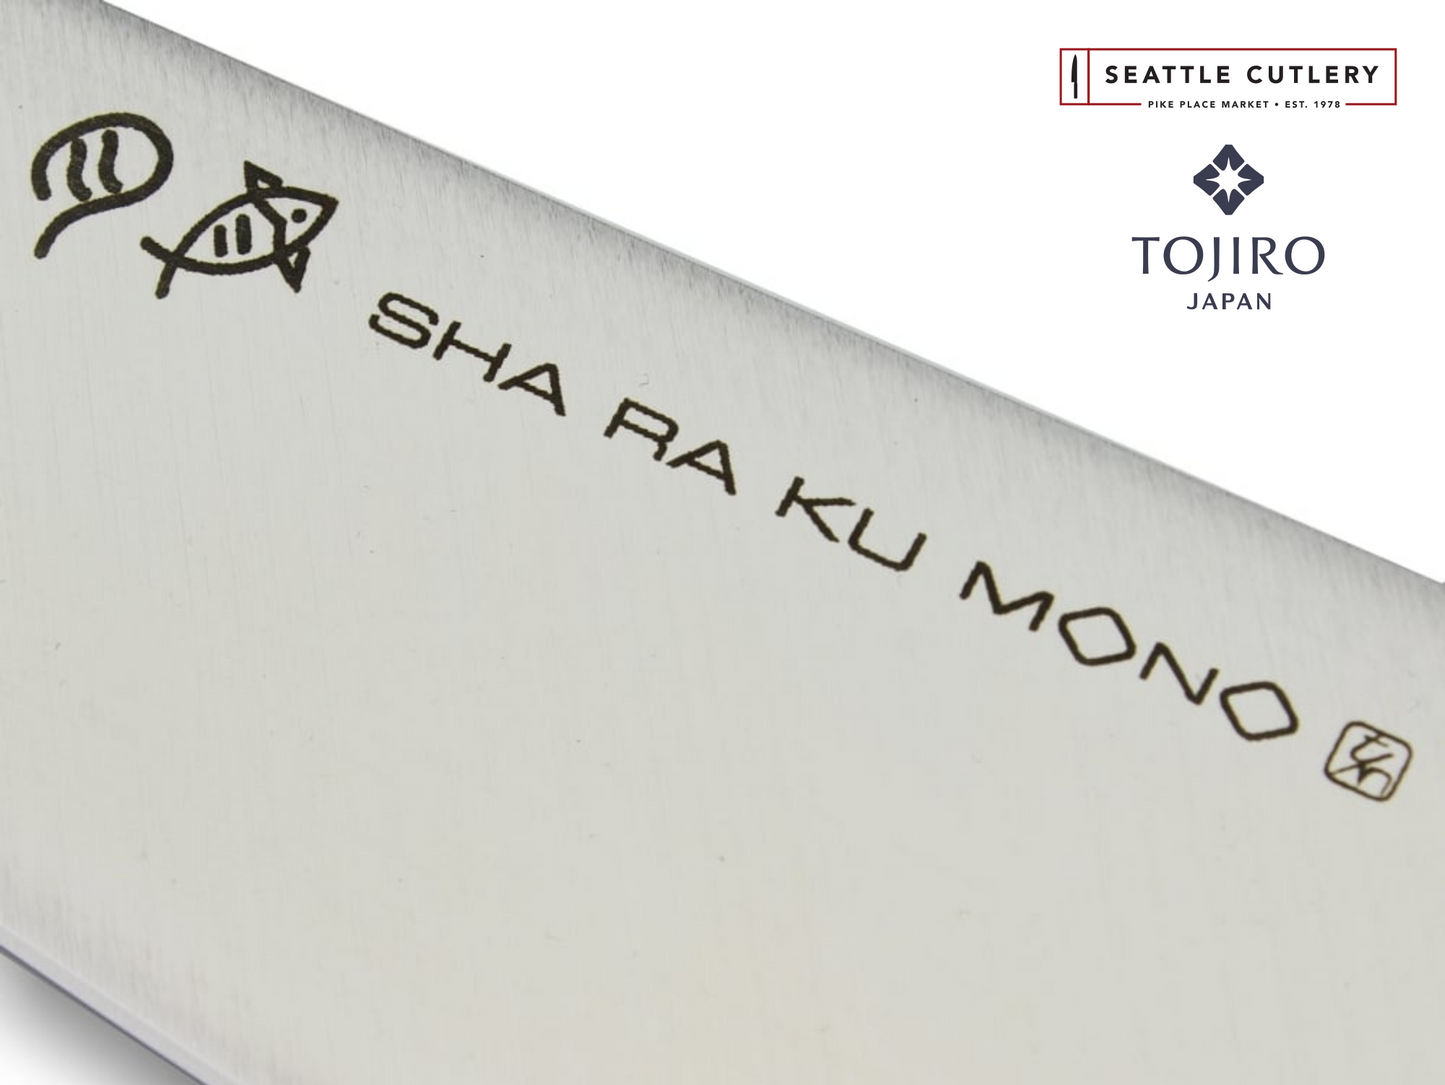 Sha Ra Ku Mono Petty Knife, 110 mm (4.3")